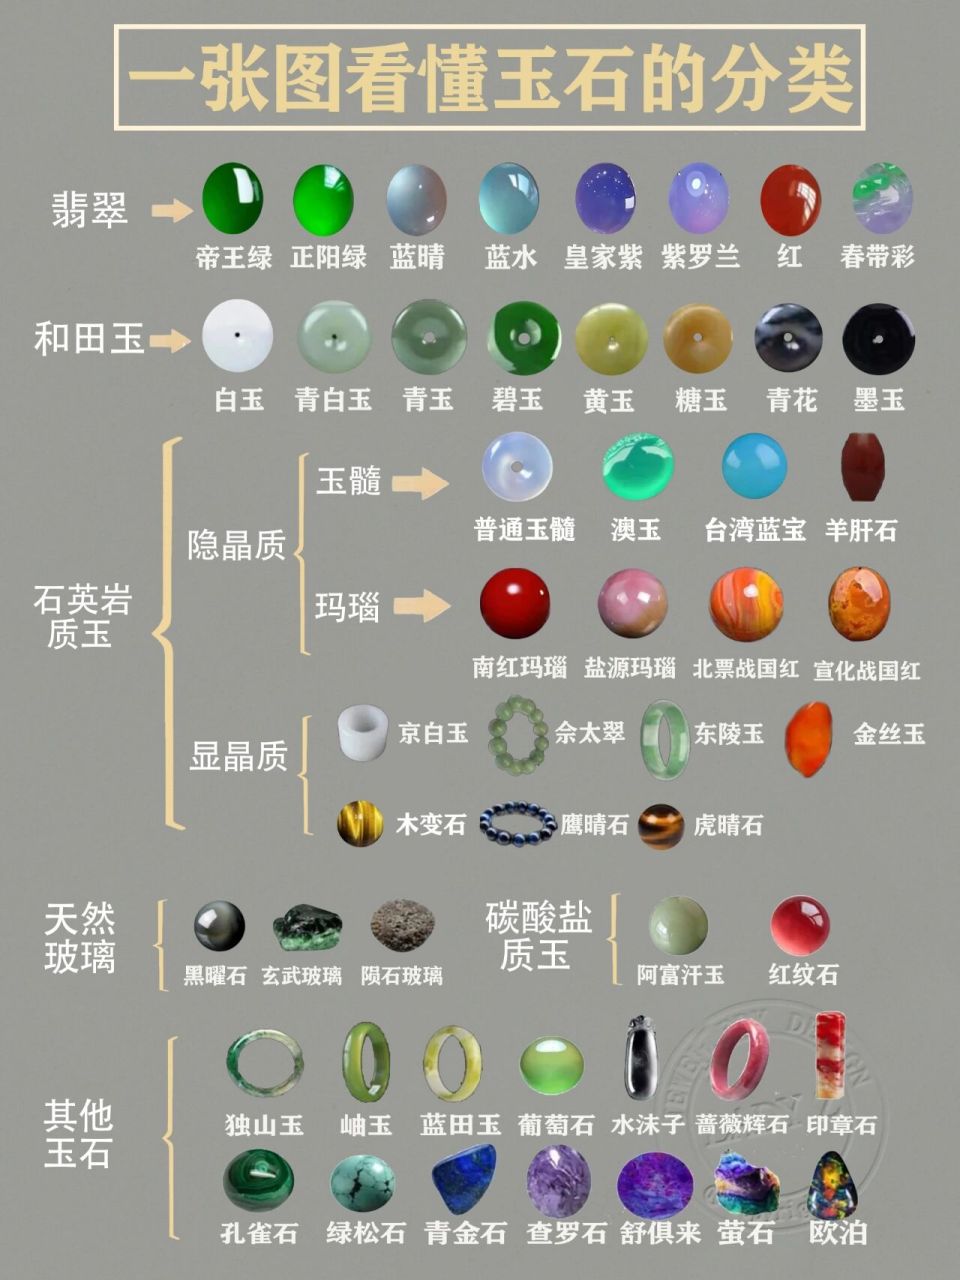 一张图看懂玉石的分类 一般来讲,玉石有狭义和广义之说